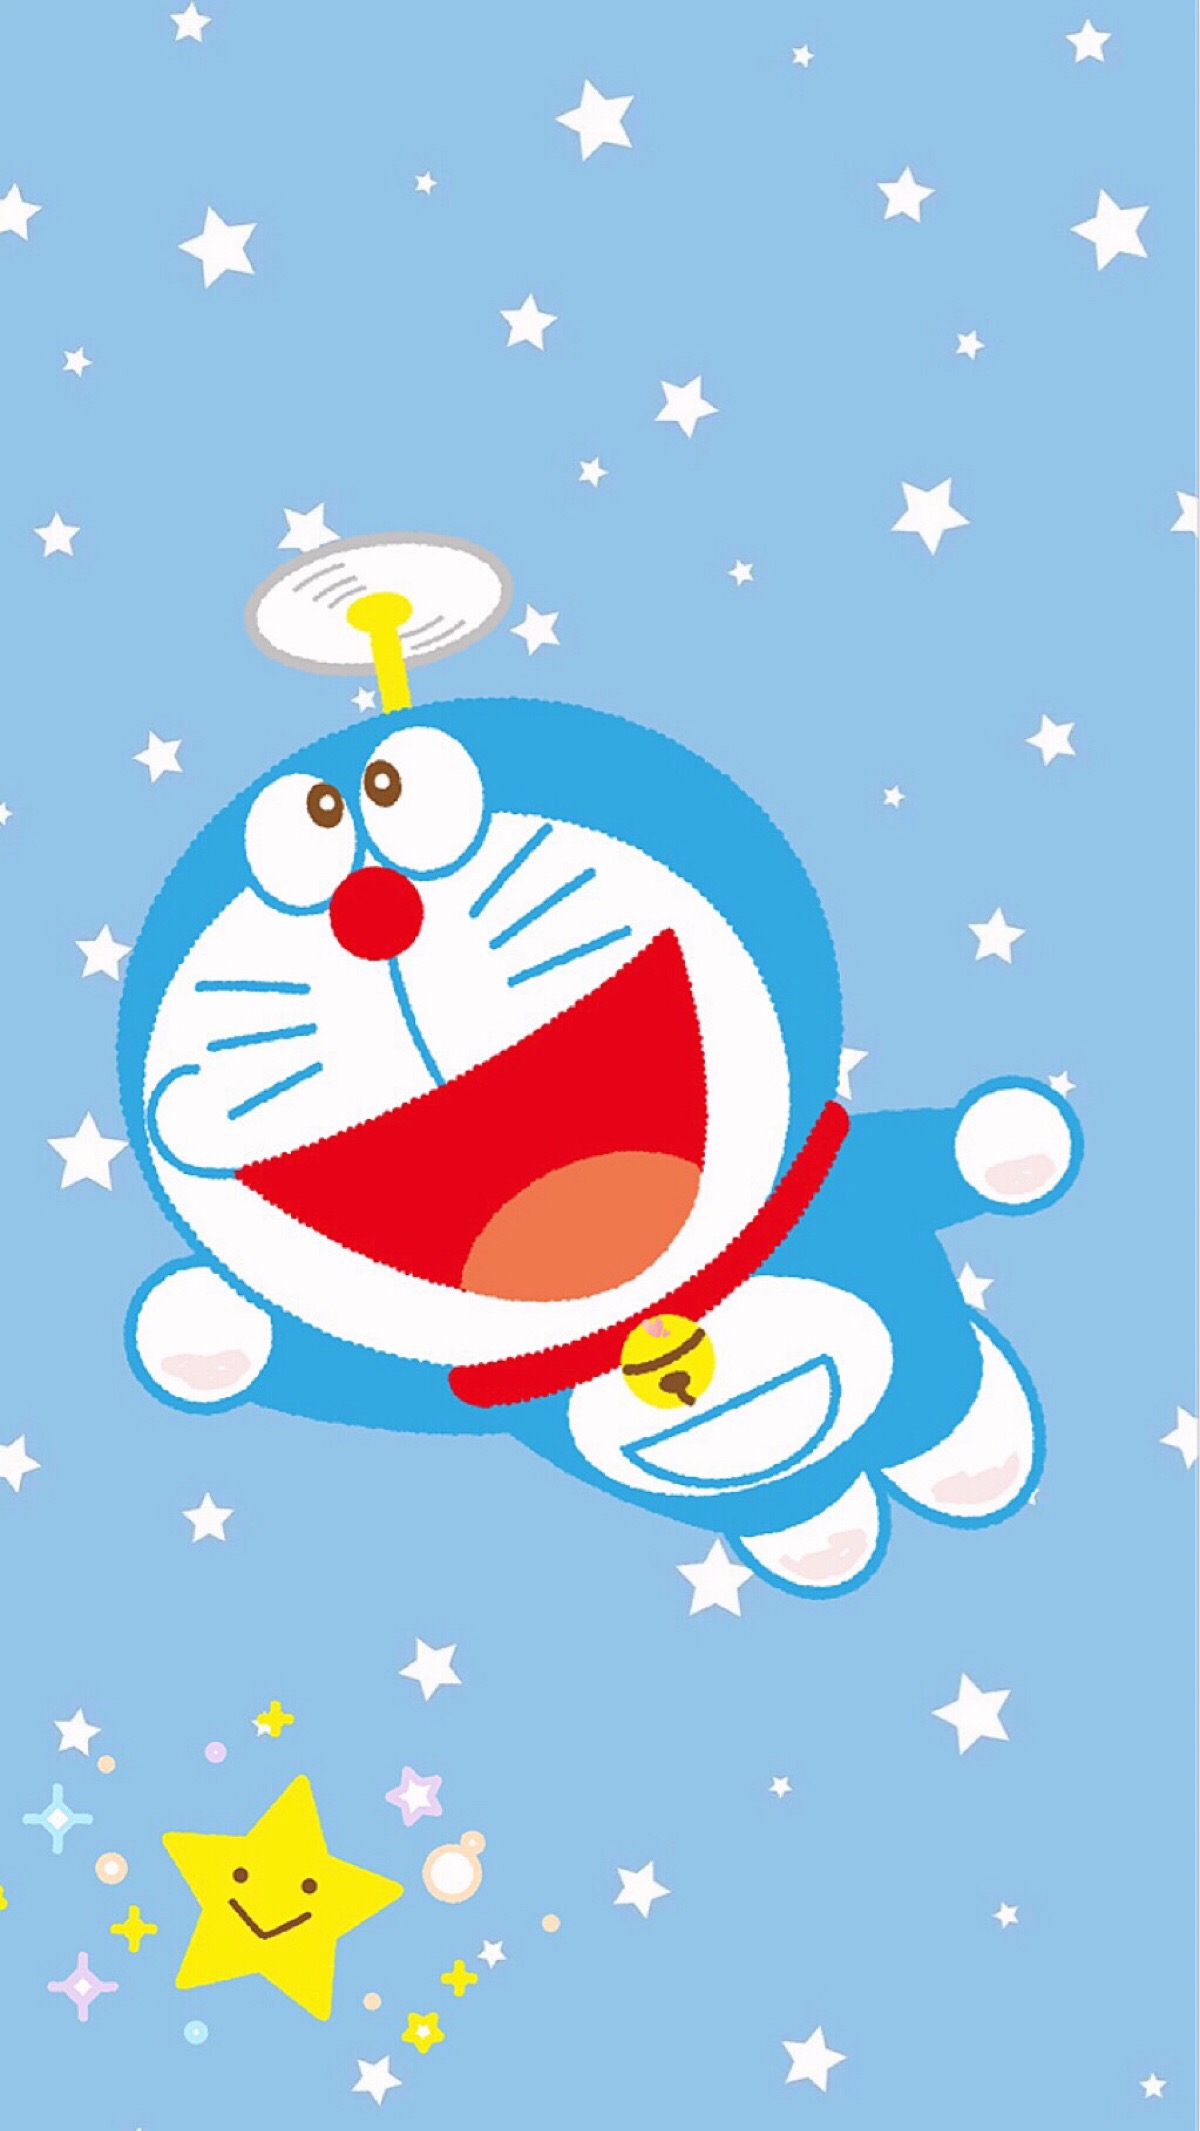 自制sanrio可爱哆啦a梦 蓝胖子 机器猫 叮当猫壁纸 布朗熊 可妮兔